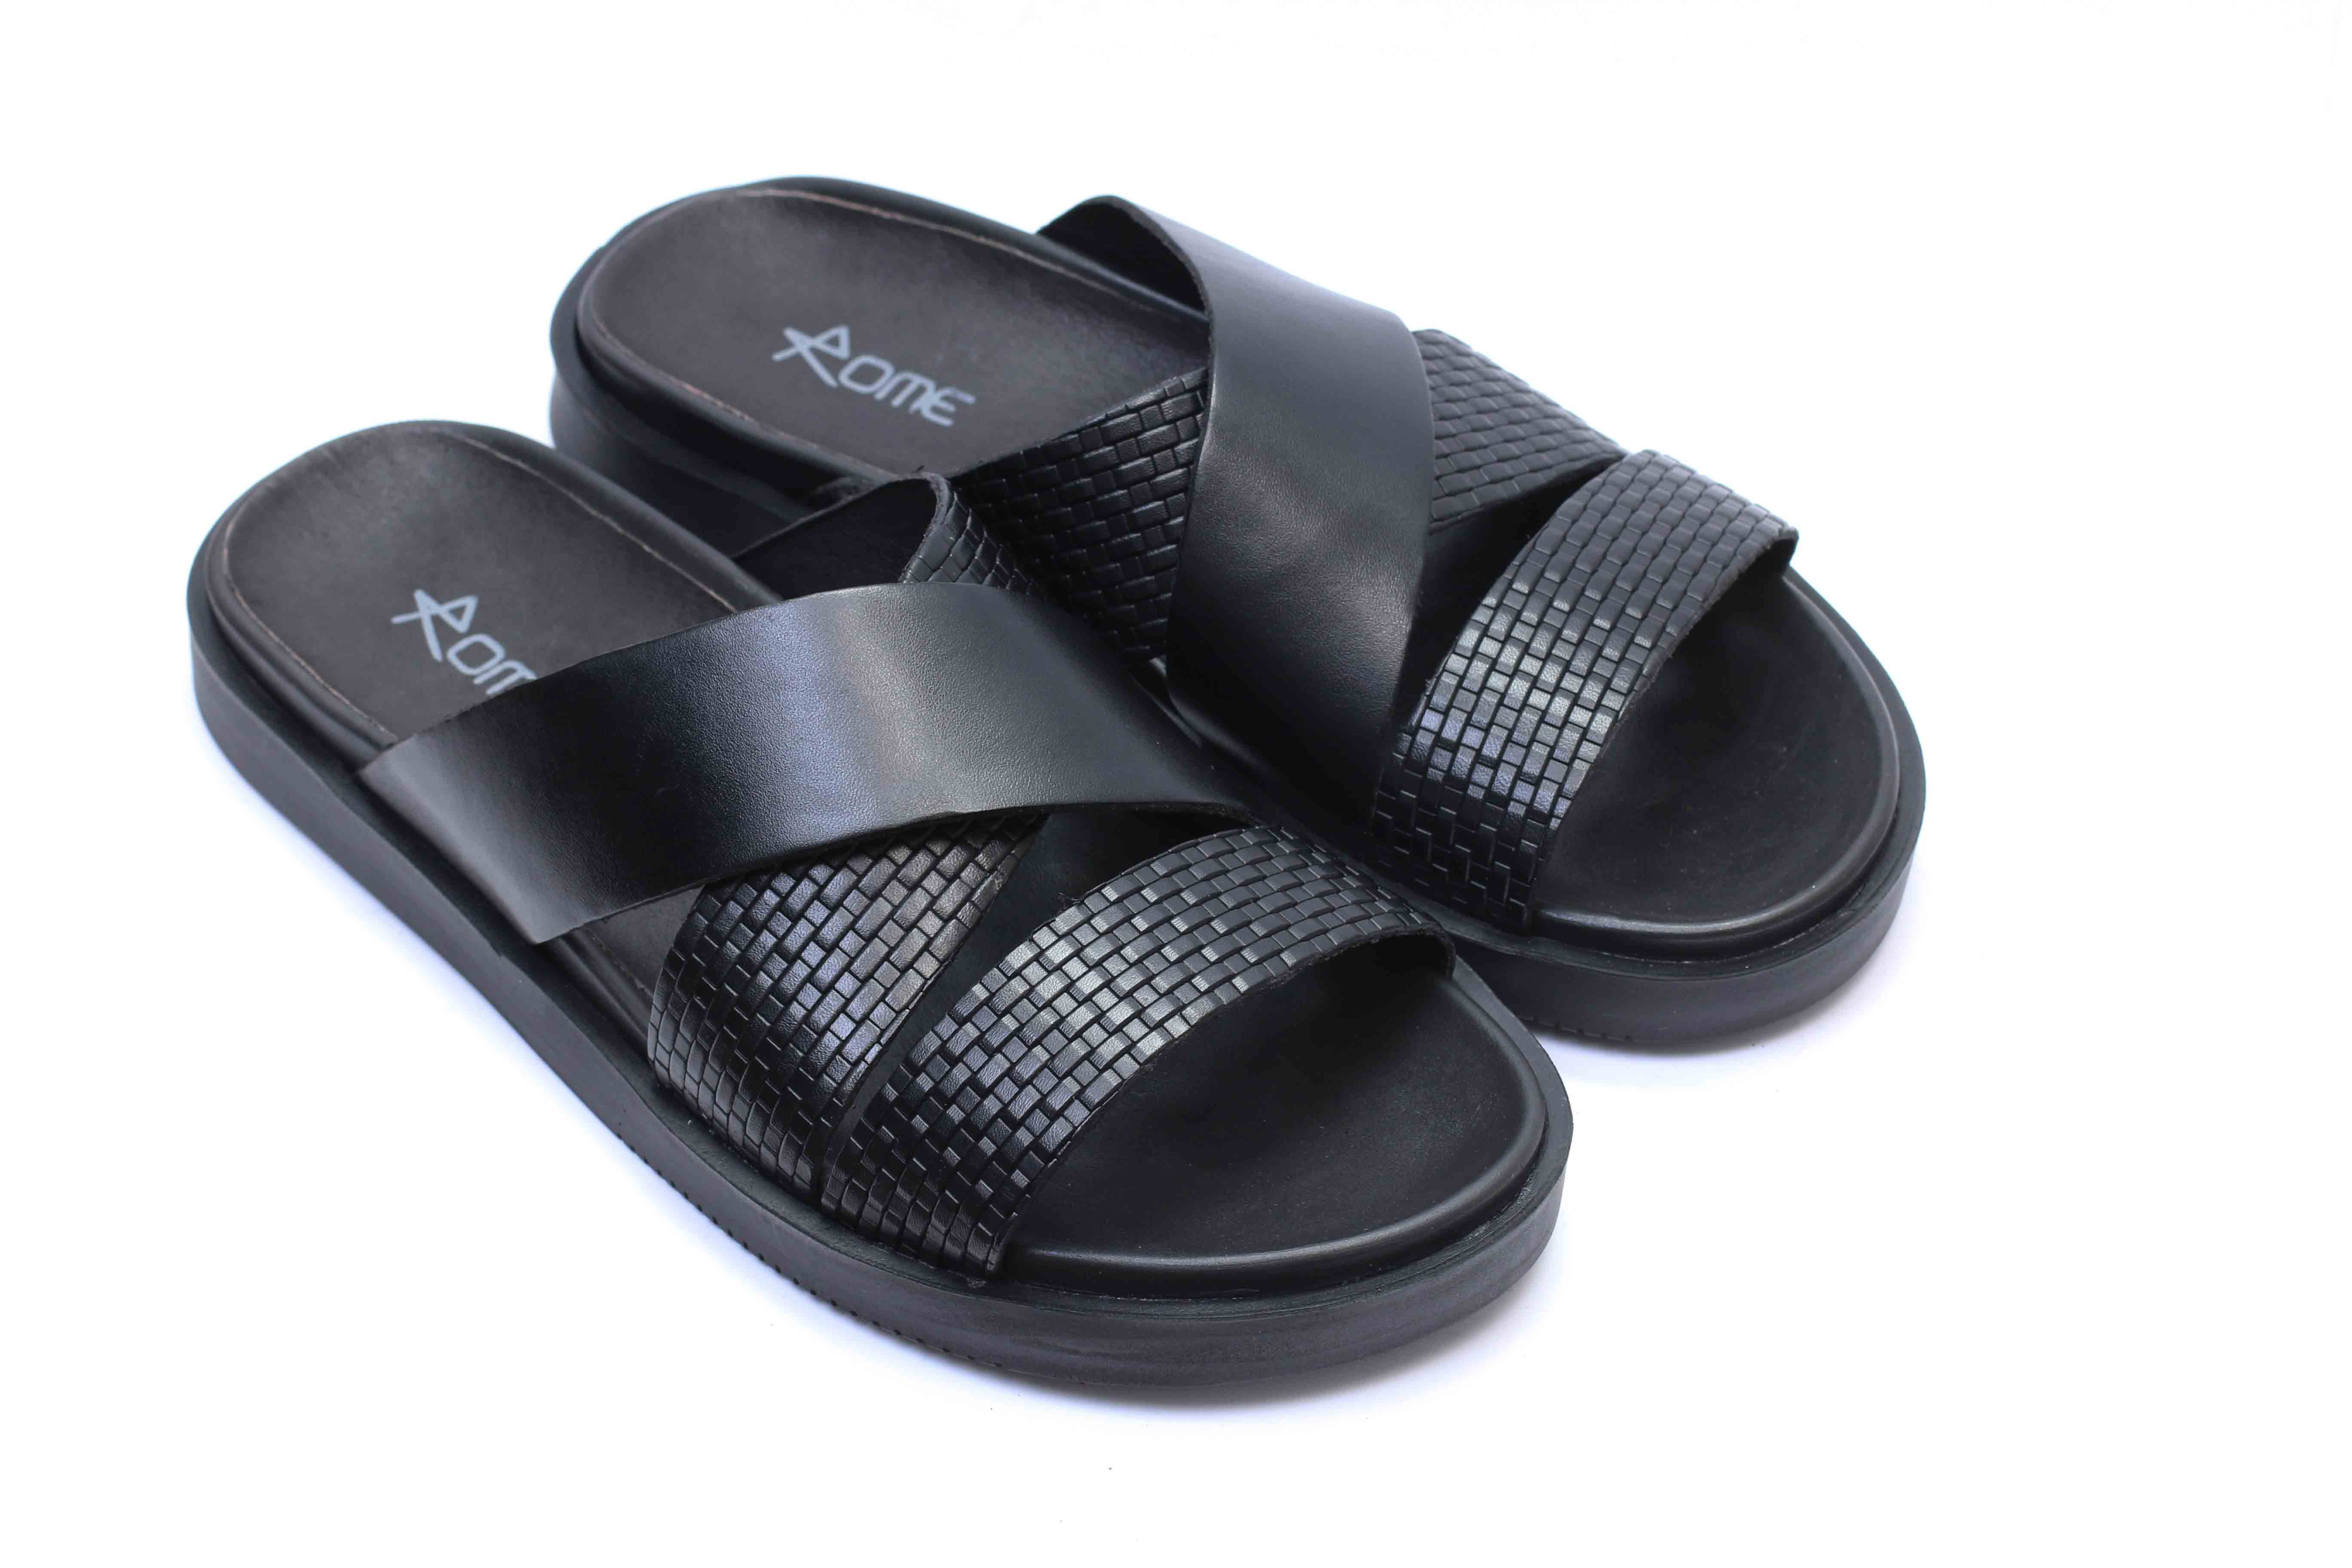 Sandales en cuir noir 0287